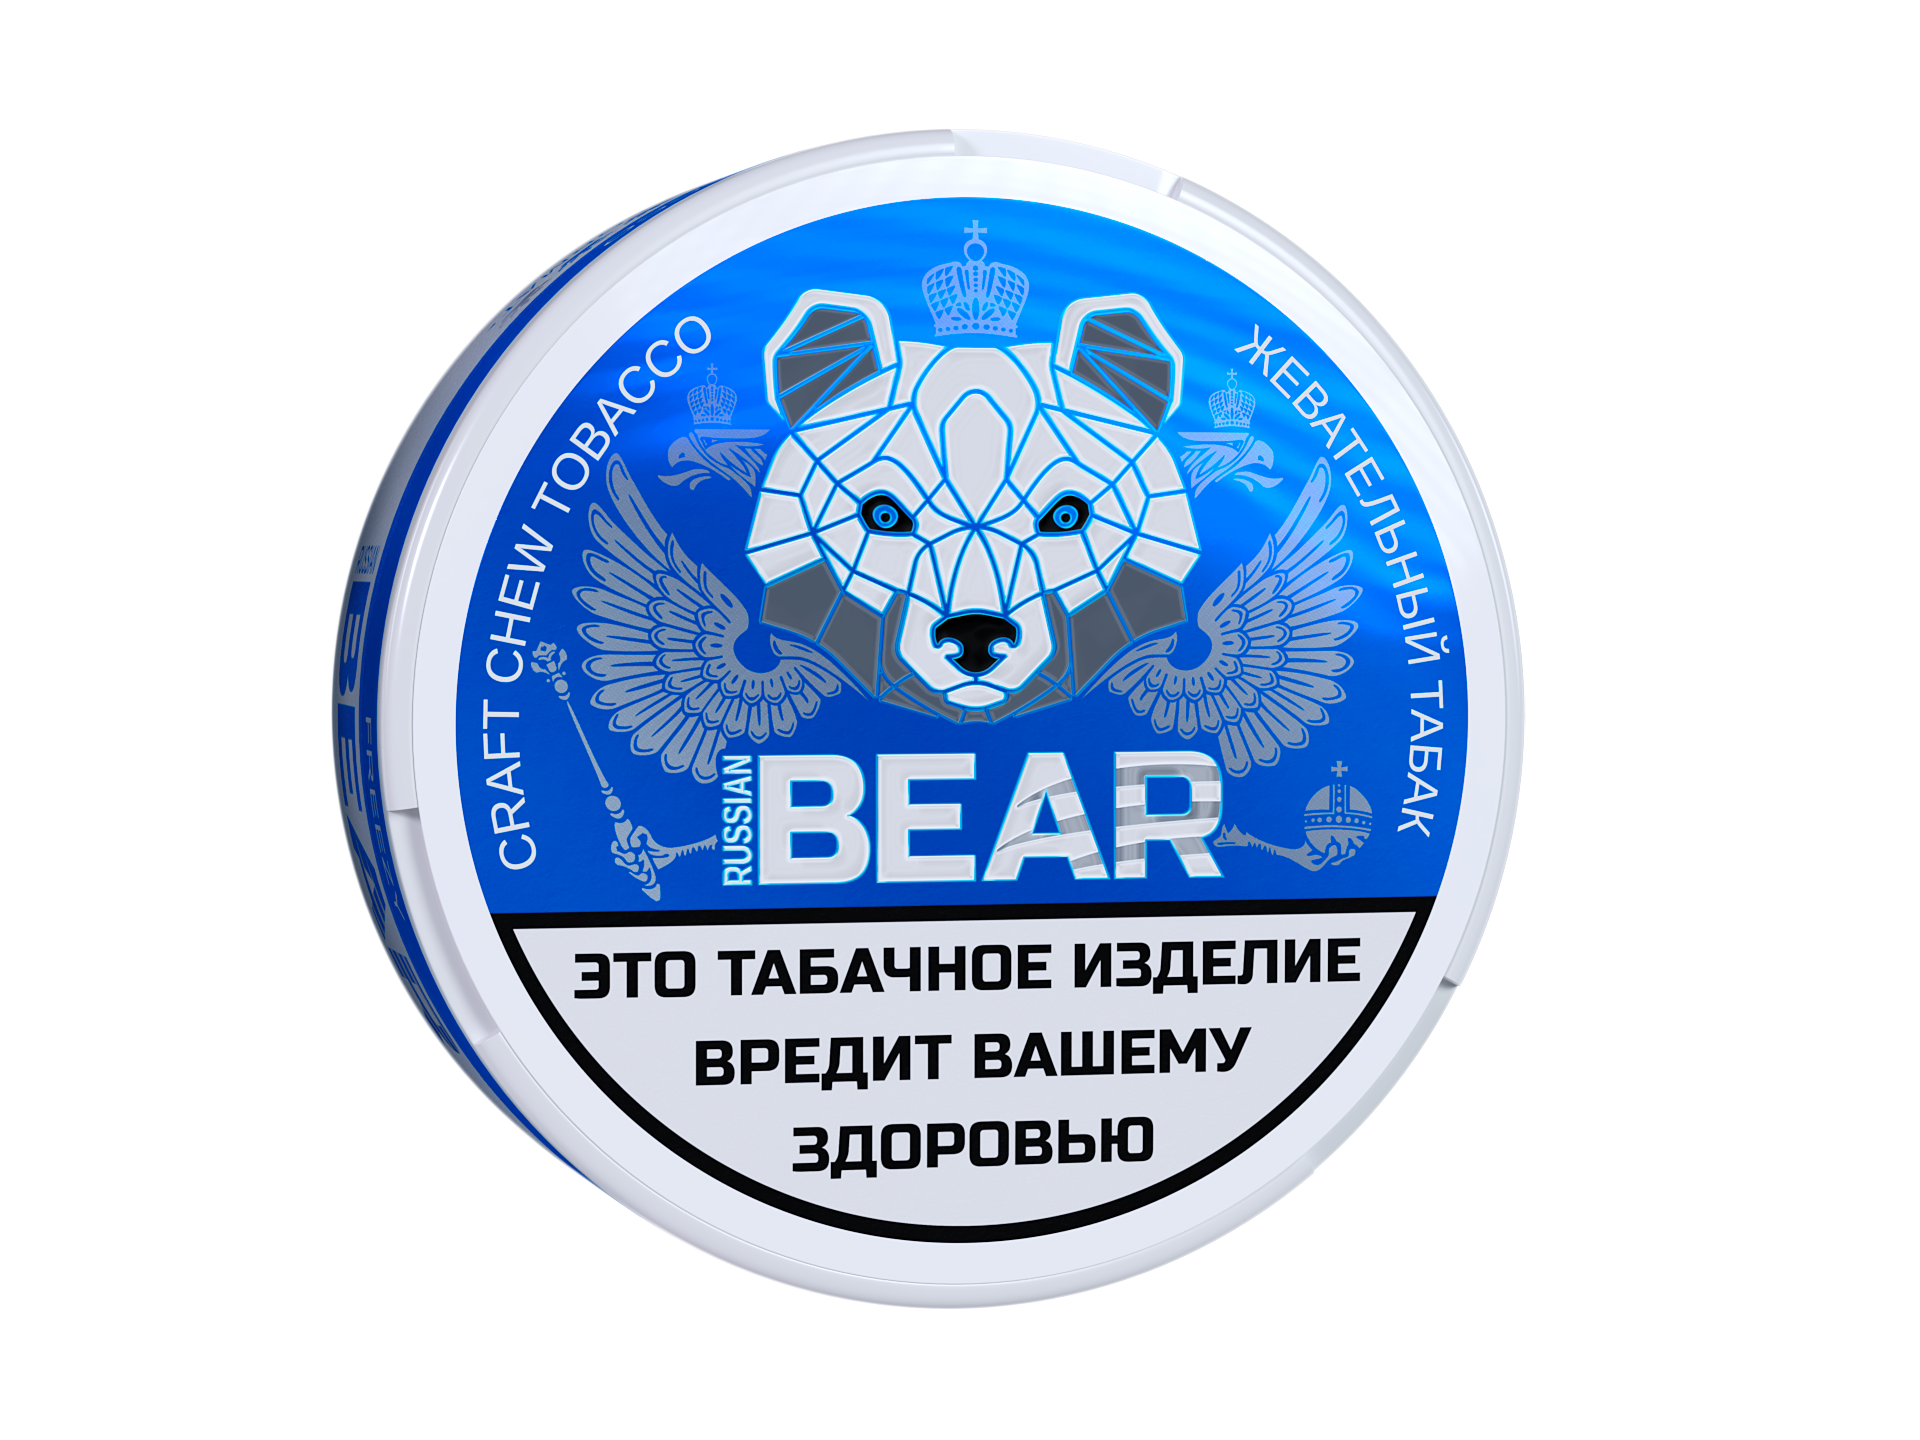 Жевательный табак Russian Bear со вкусом Freezy